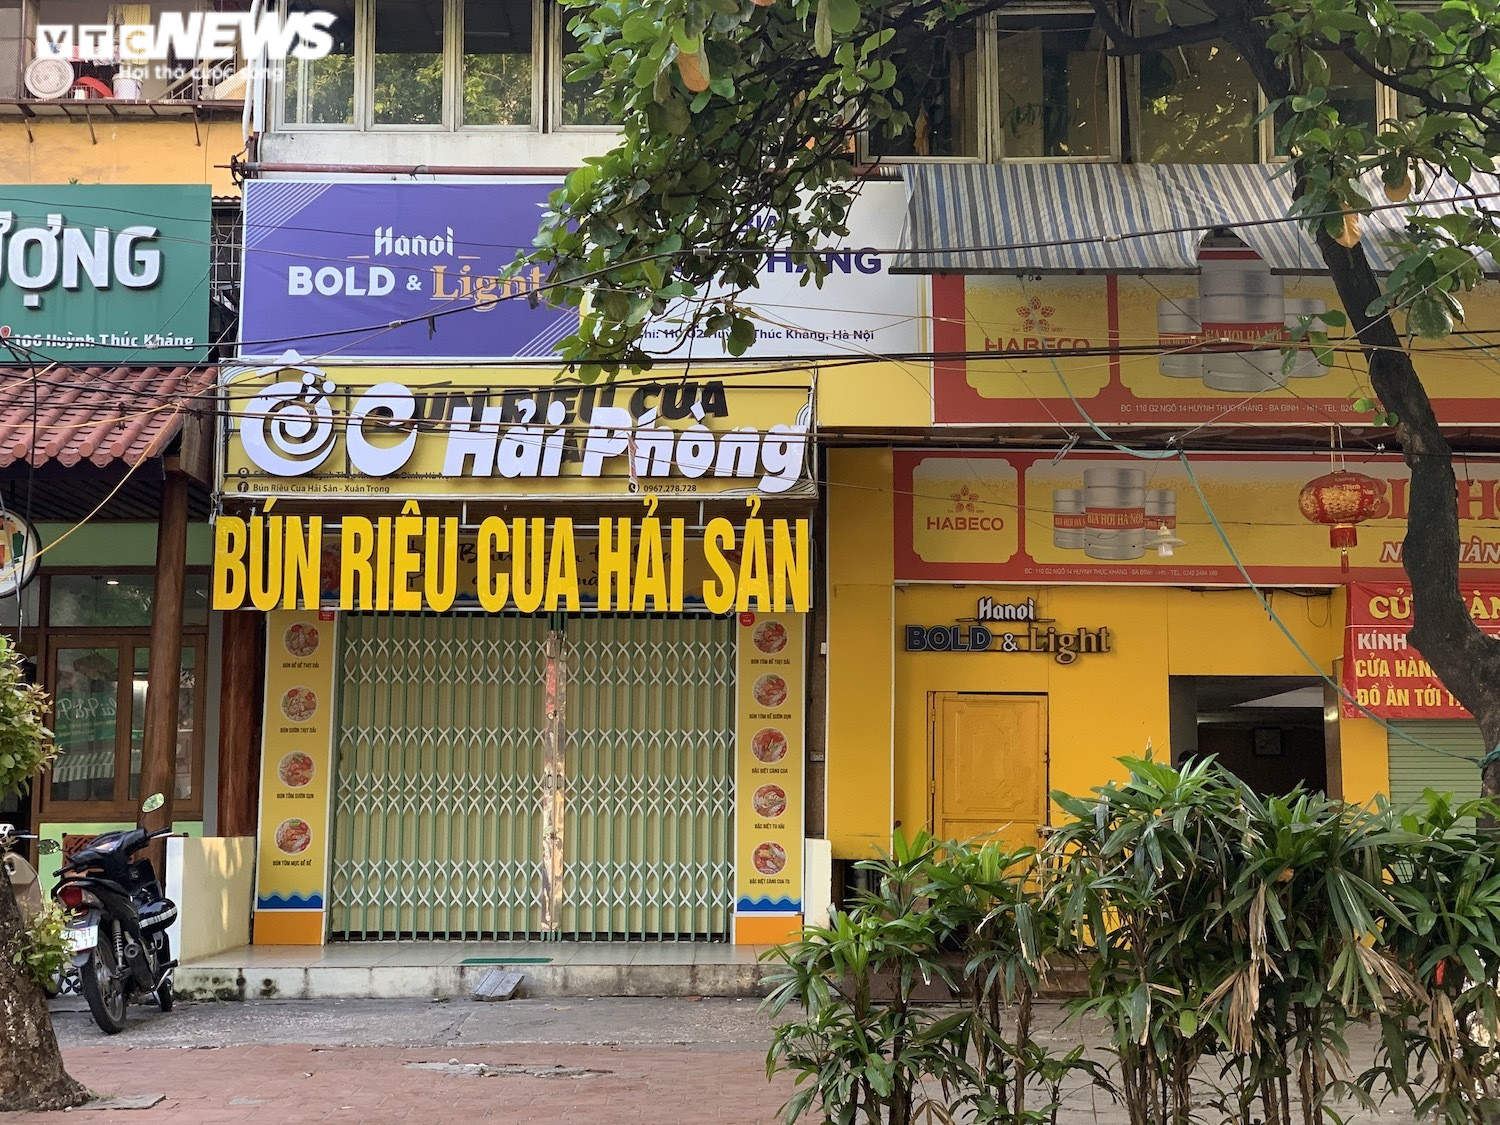 Phòng COVID-19, hàng quán ăn sáng ở Hà Nội nơi đóng cửa, nơi chỉ bán mang về  - 13